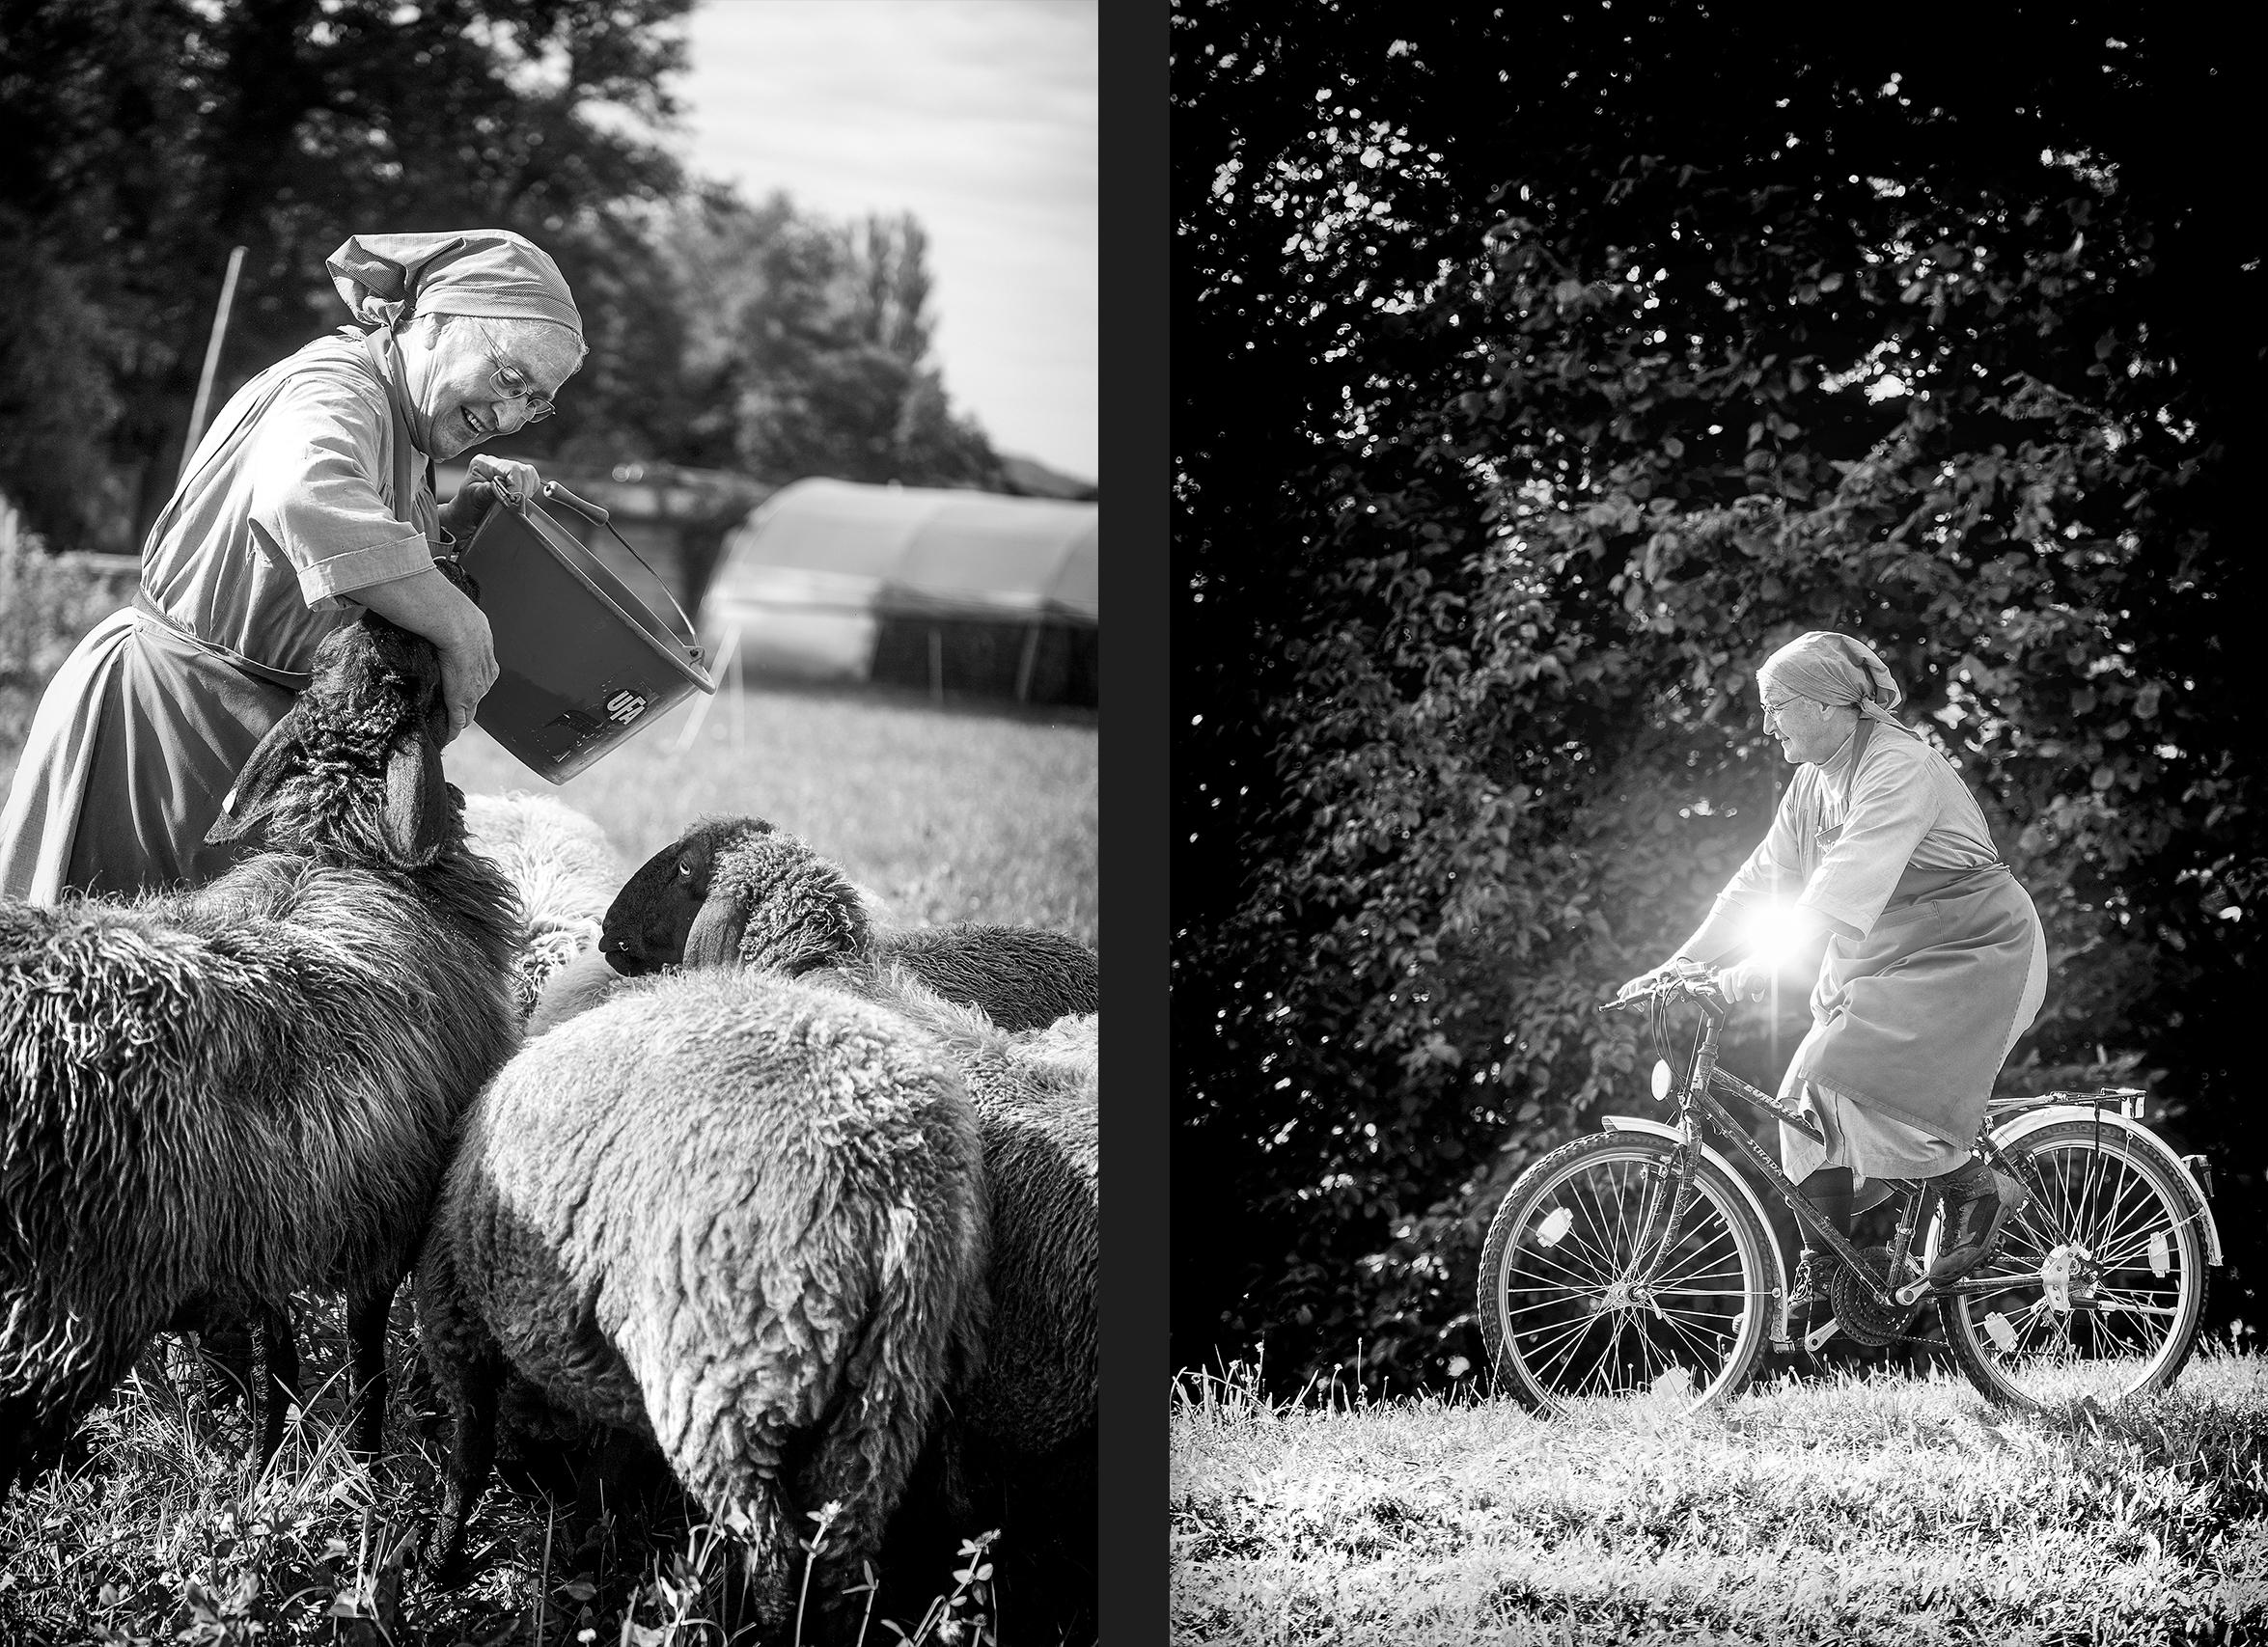 صورتان متجاورتان لراهبة، في الأولى وهي تركب دراجة هوائية، وفي الثانية وهي تطعم الأغنام